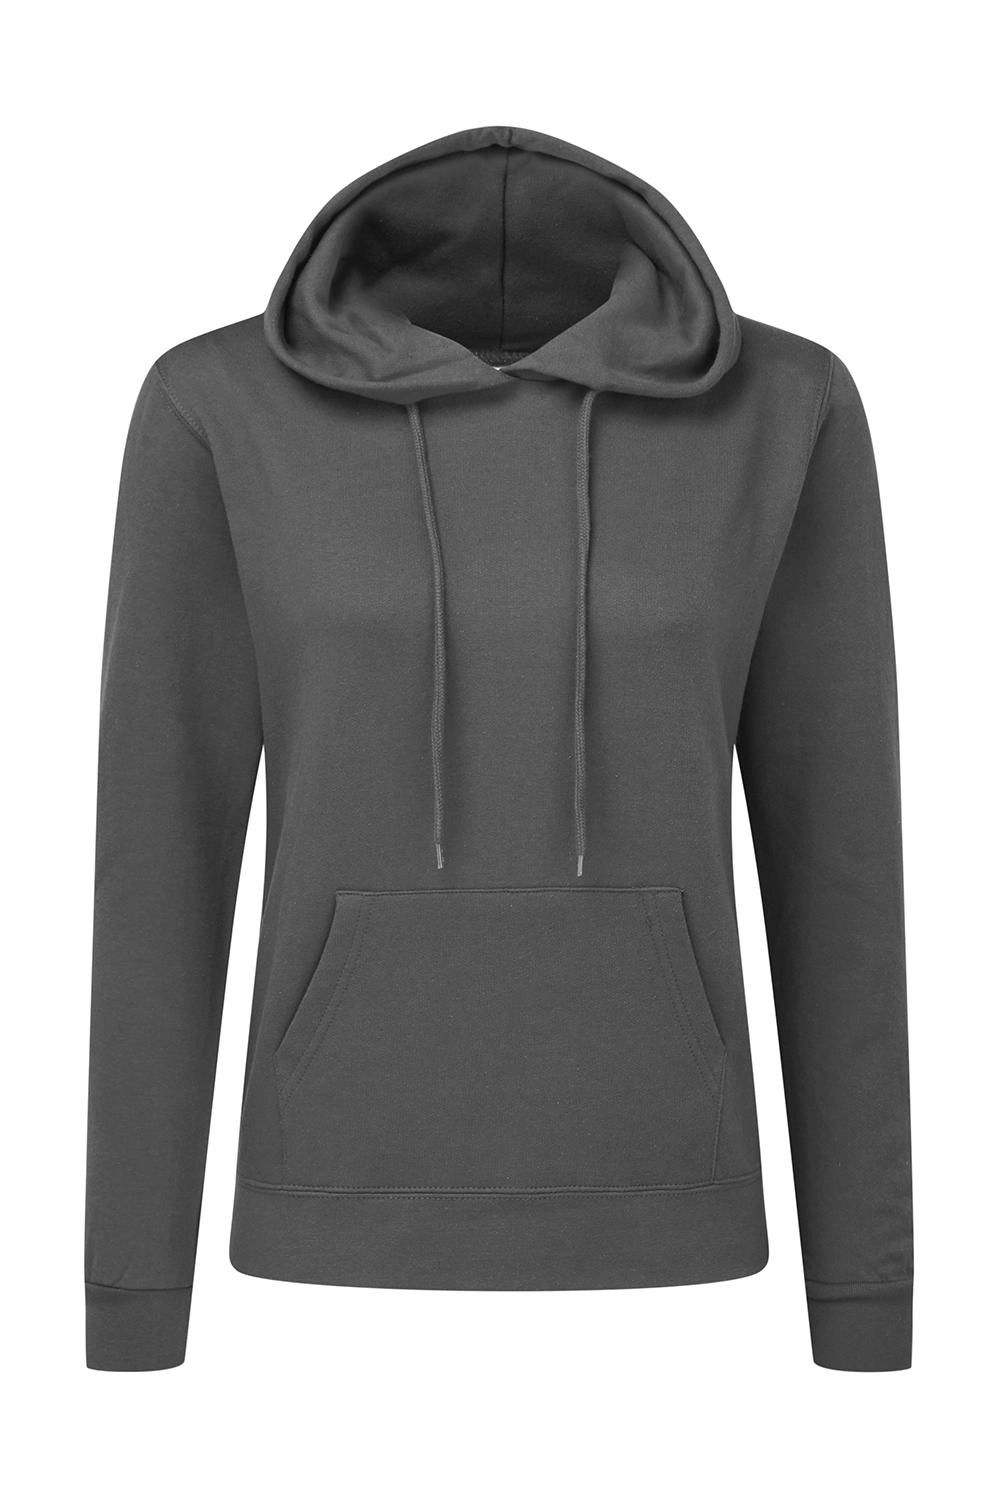 Hooded Sweatshirt Women zum Besticken und Bedrucken in der Farbe Grey mit Ihren Logo, Schriftzug oder Motiv.